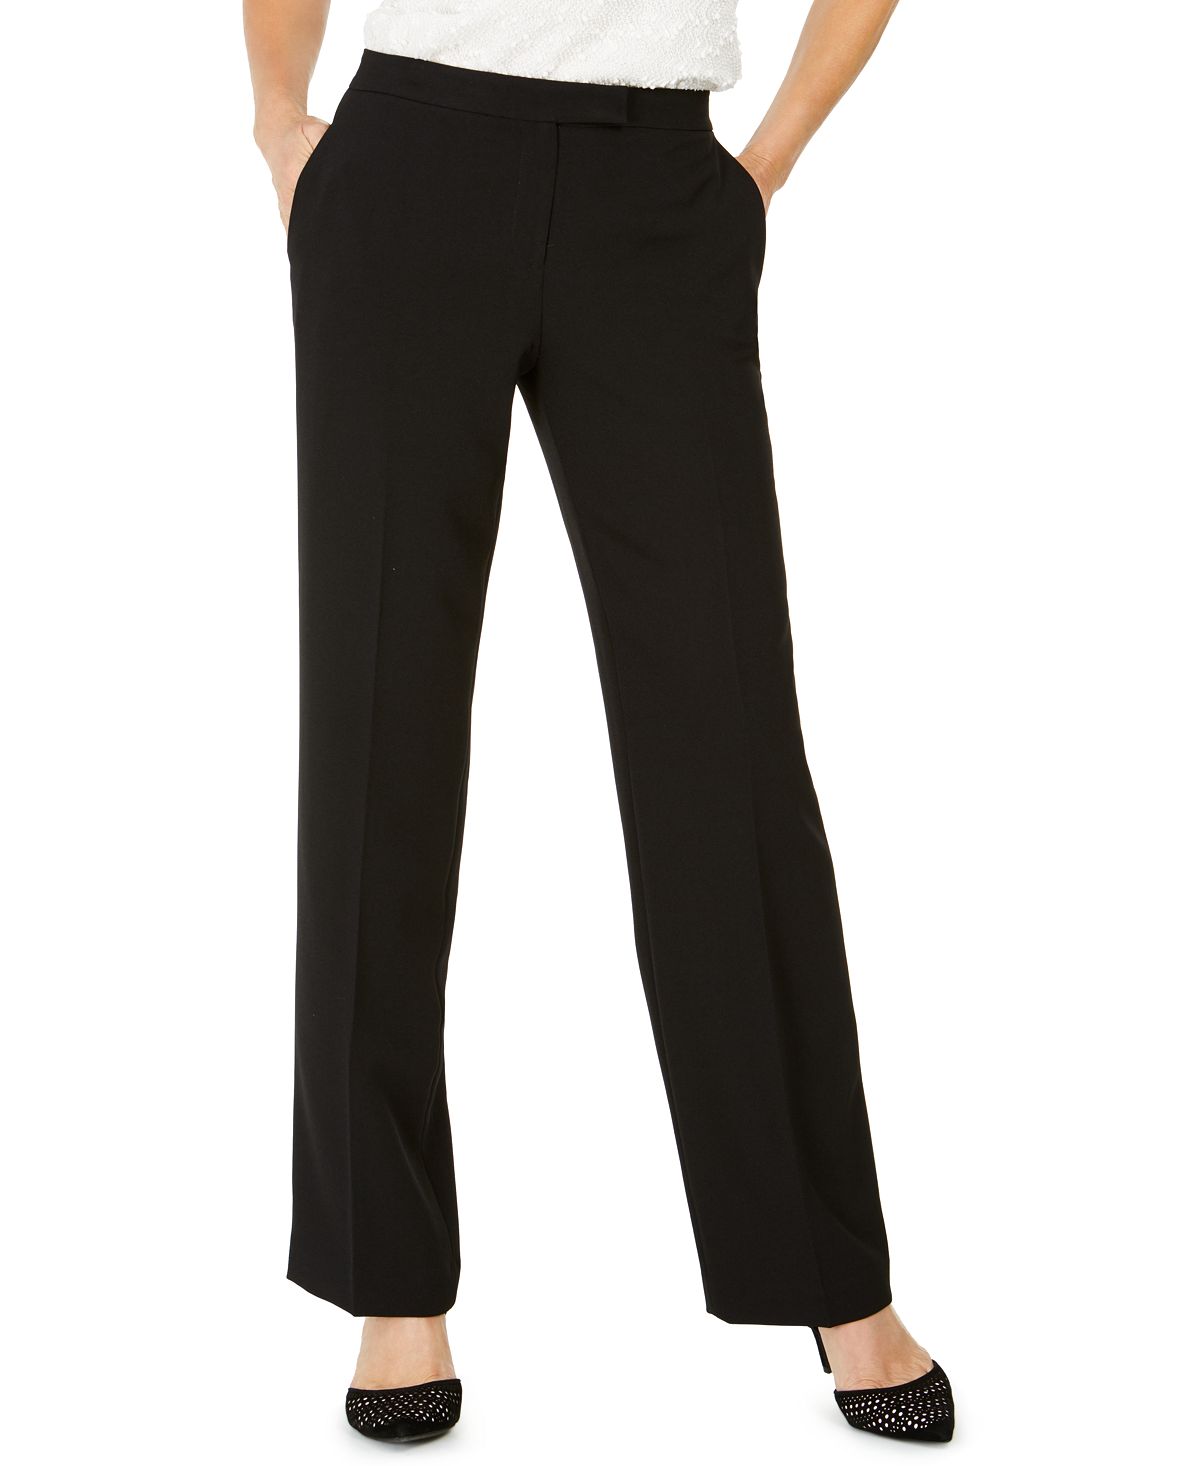 Современные классические брюки tab-waist, обычные и миниатюрные размеры Kasper, черный